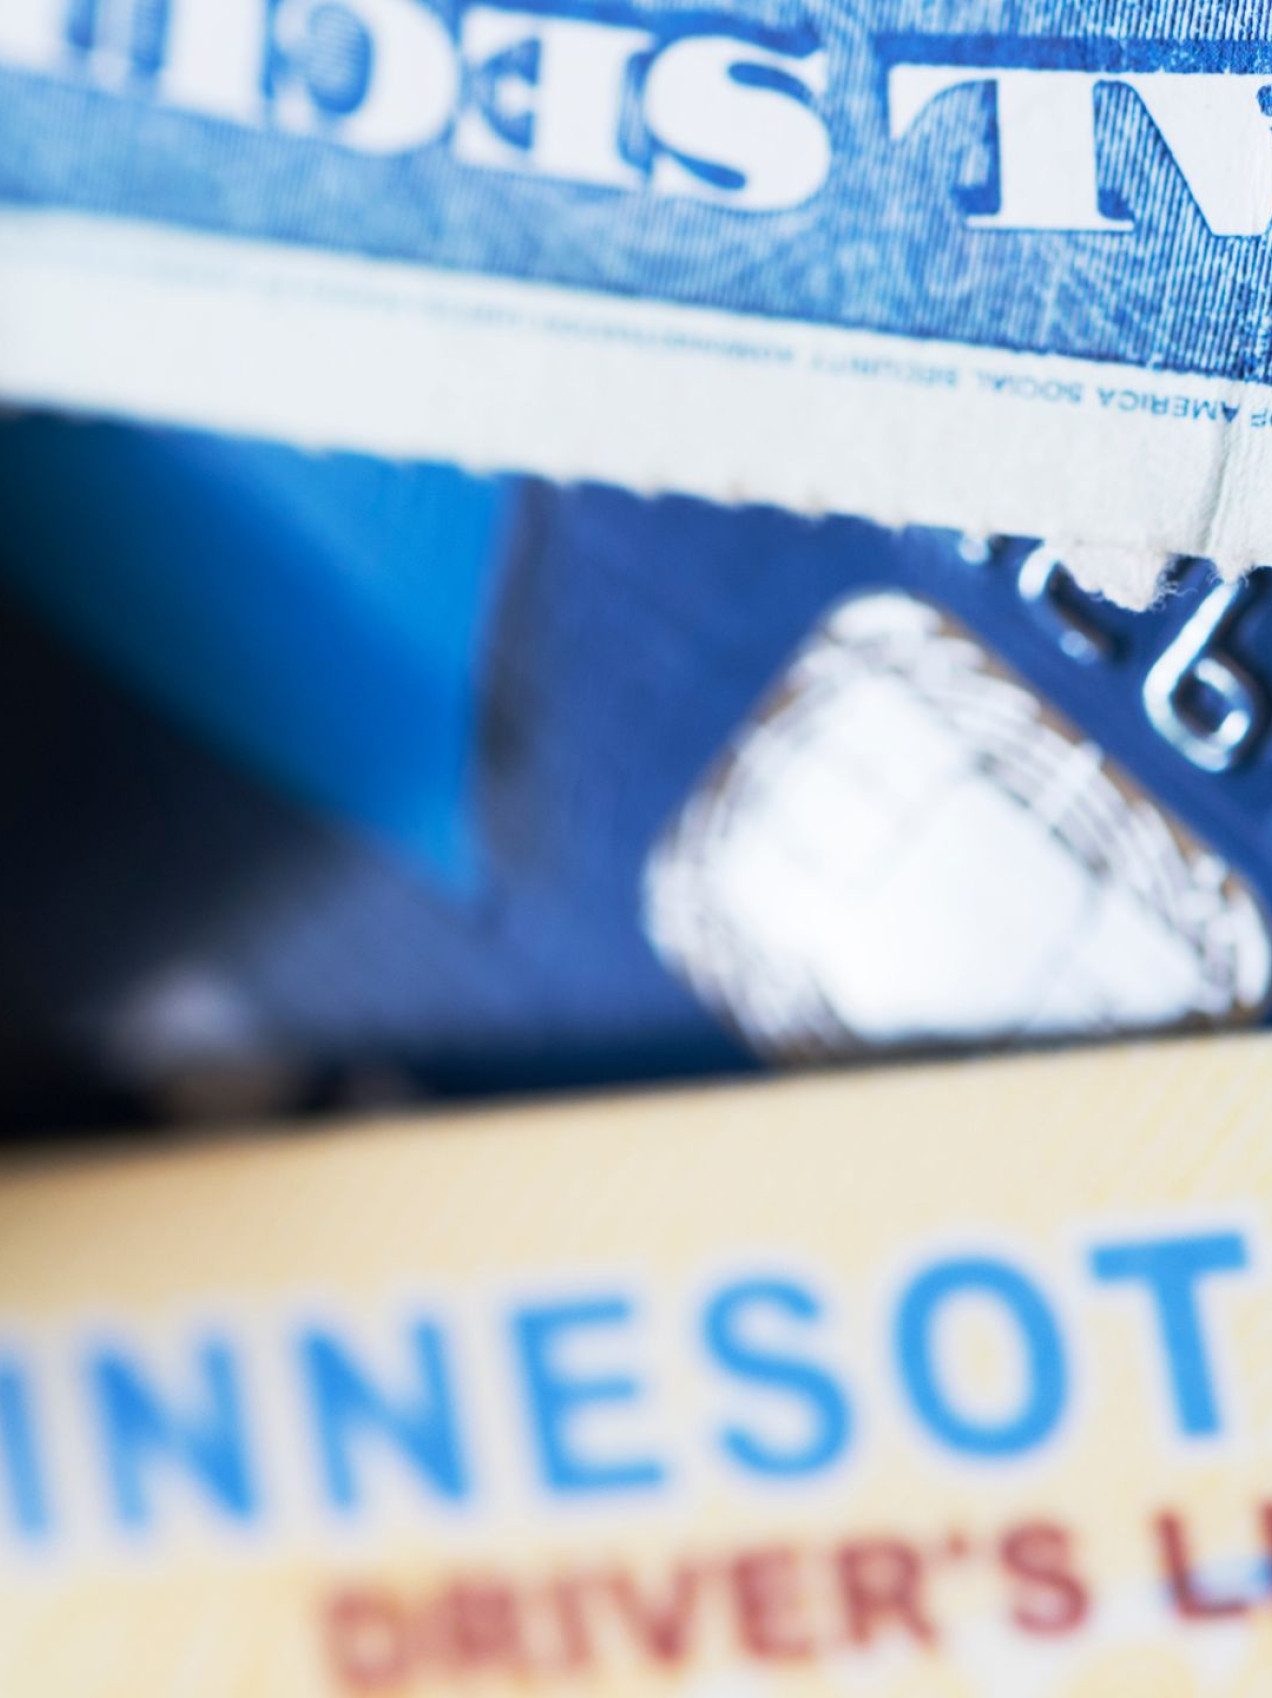 Bild von einem US-Führerschein und der Social Security Card